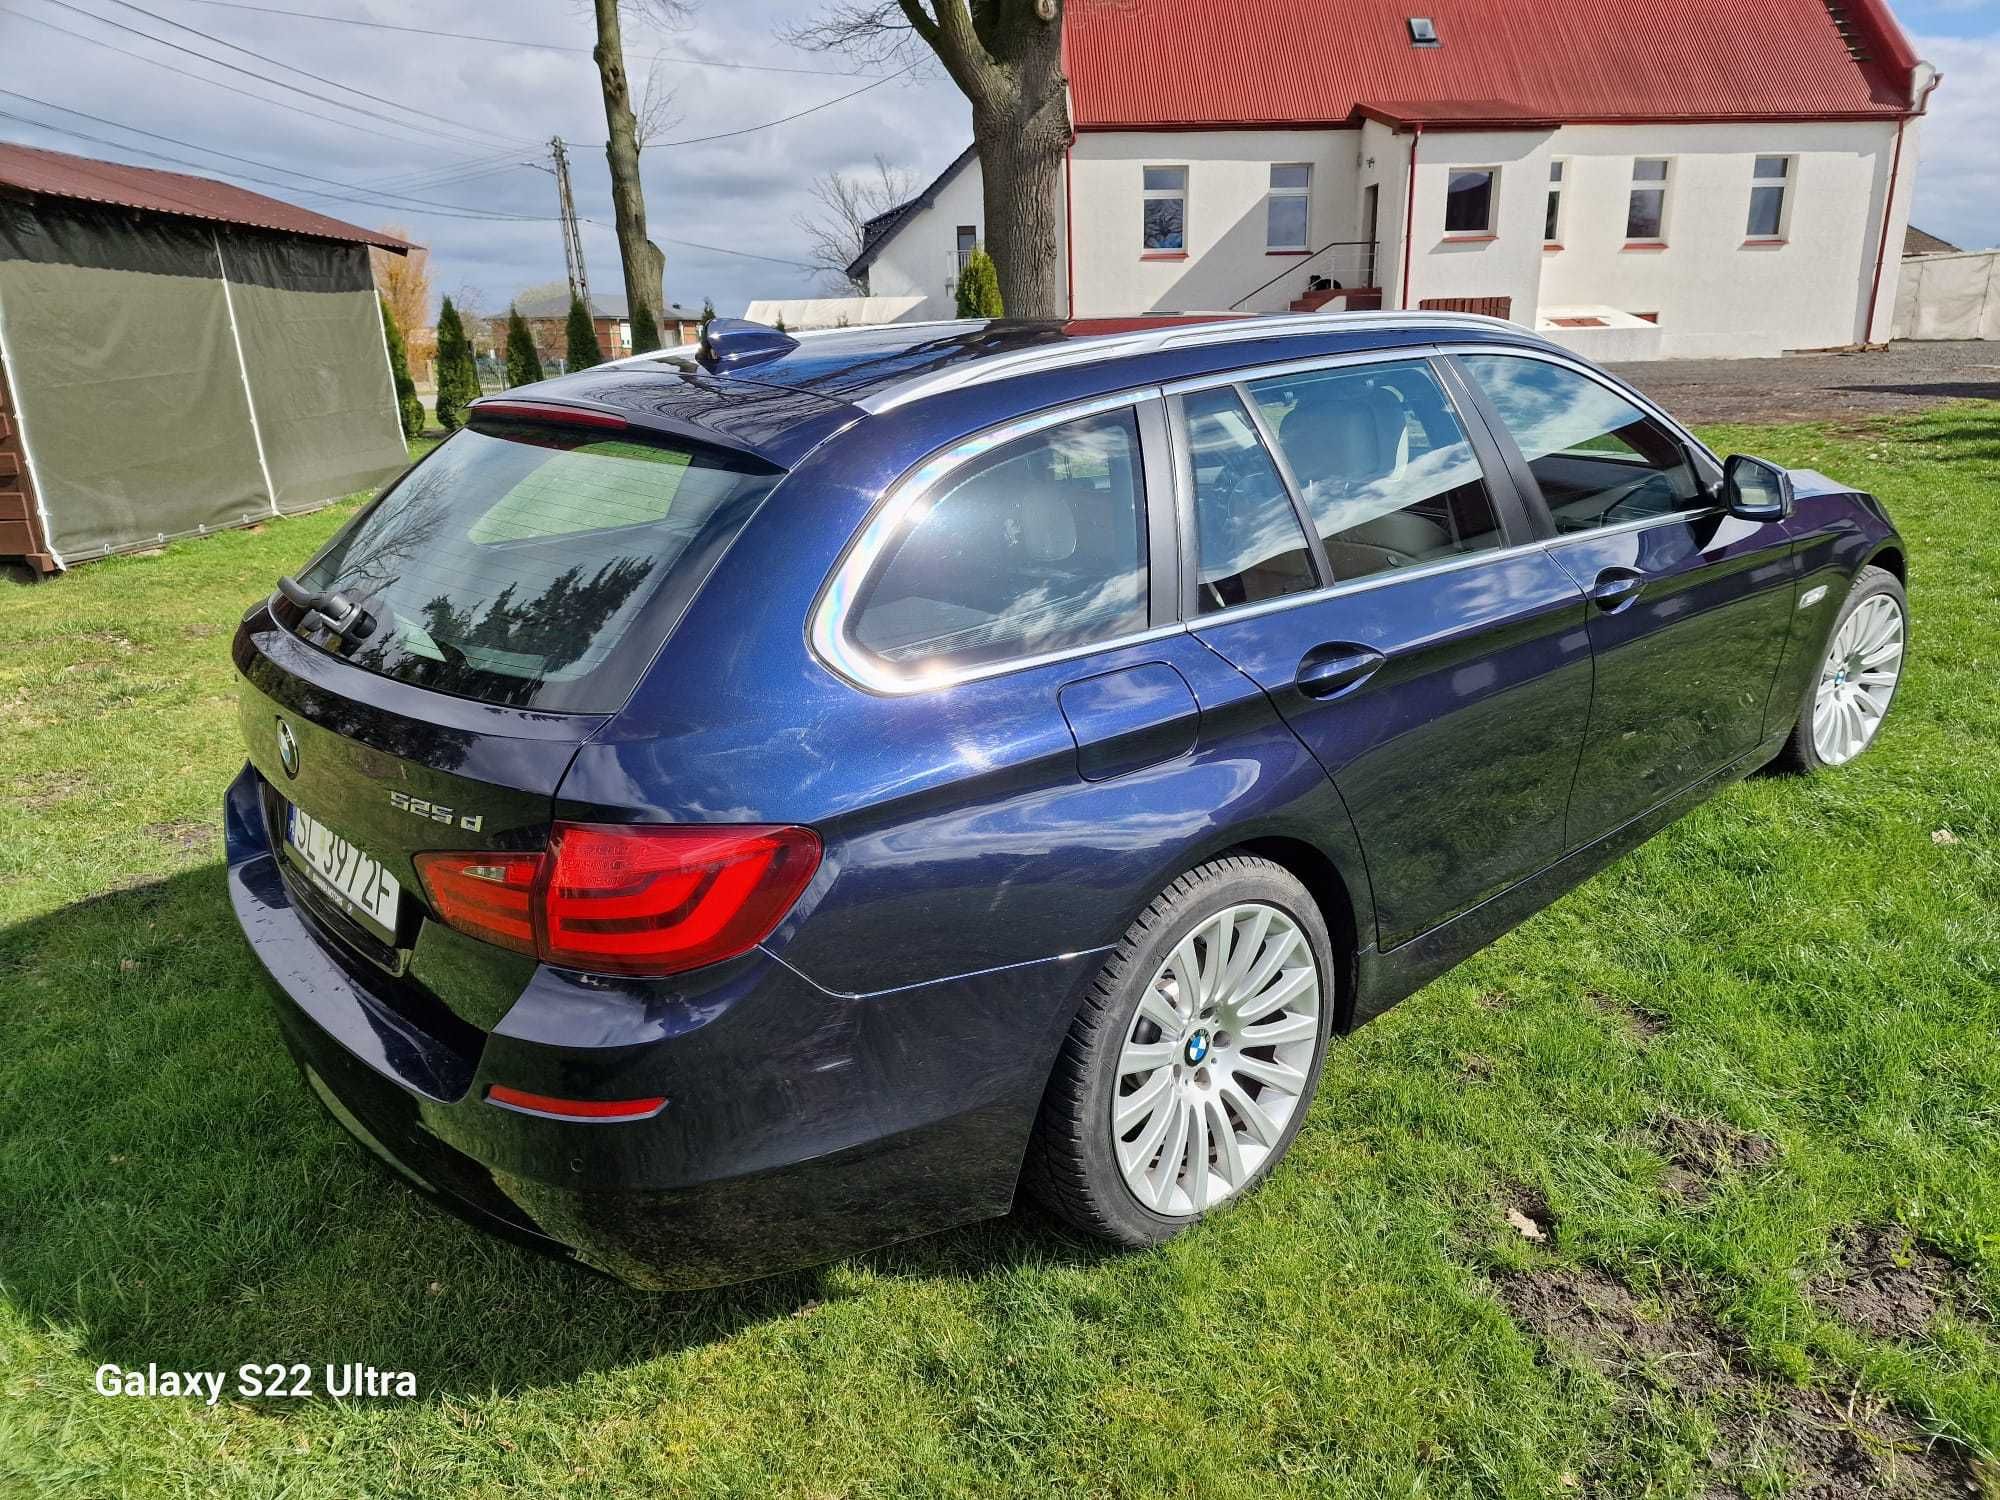 BMW 525d XDRIVE rok. prod. 2012  poj. 2000  salon Polska  bezwypadkowy